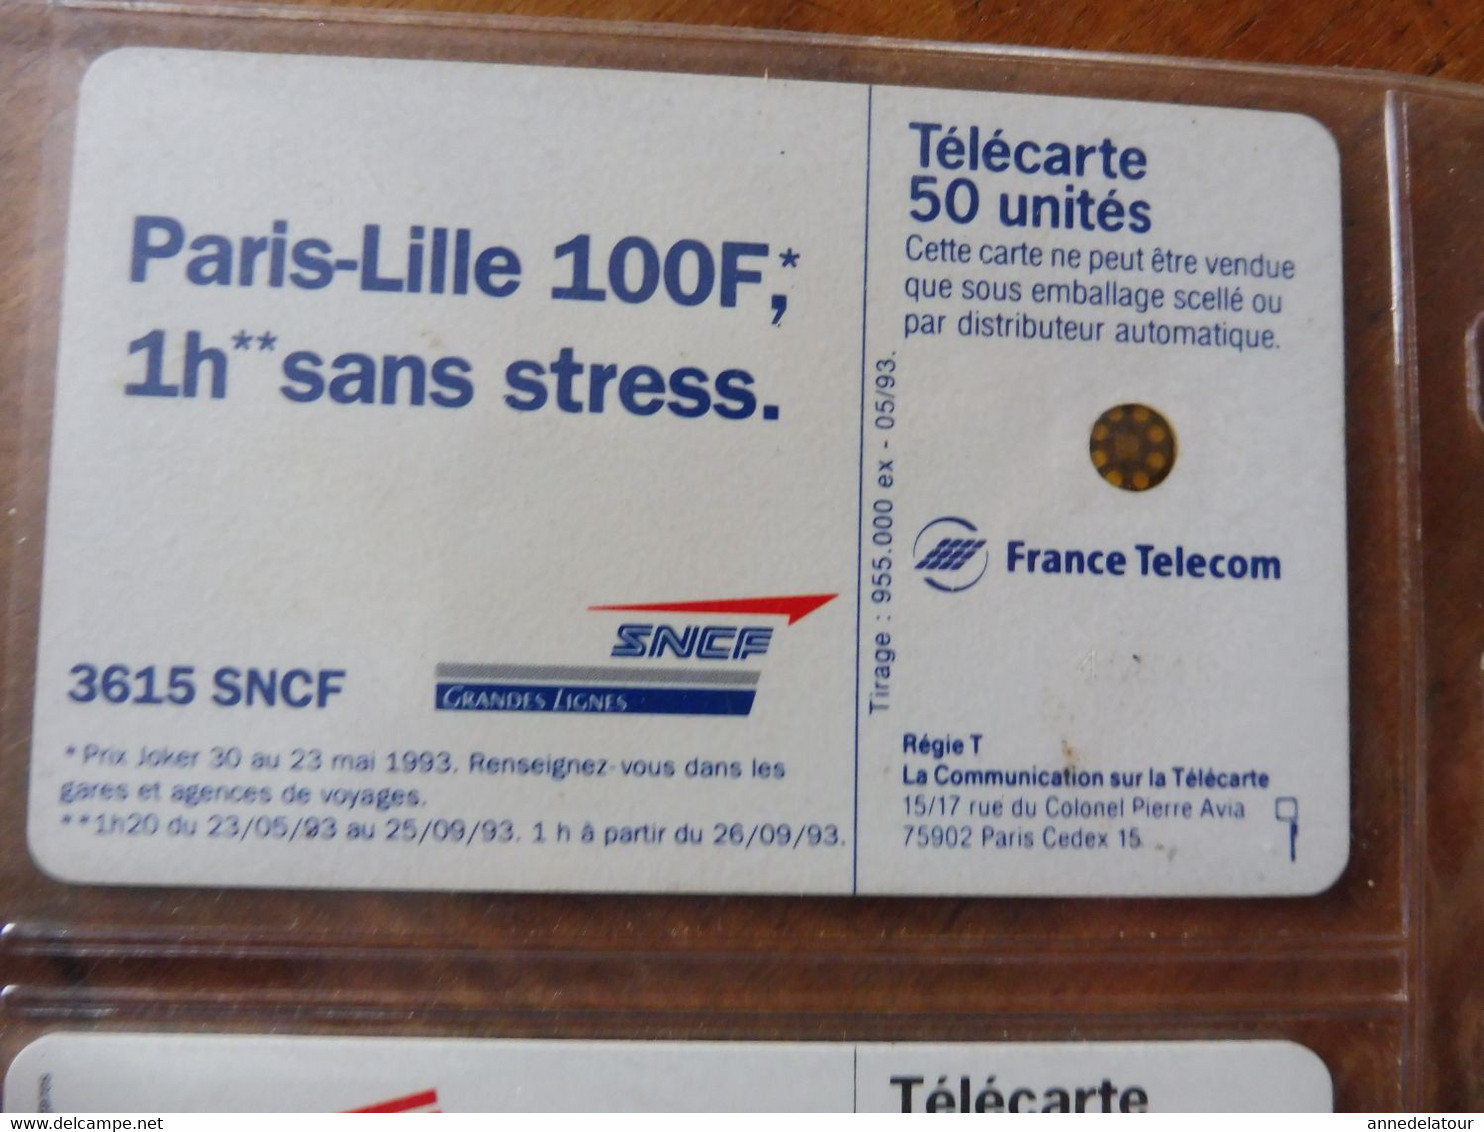 8 télécartes (cartes téléphoniques)  FRANCE TELECOM  avec publicité pour la SNCF  (TGV, RER )